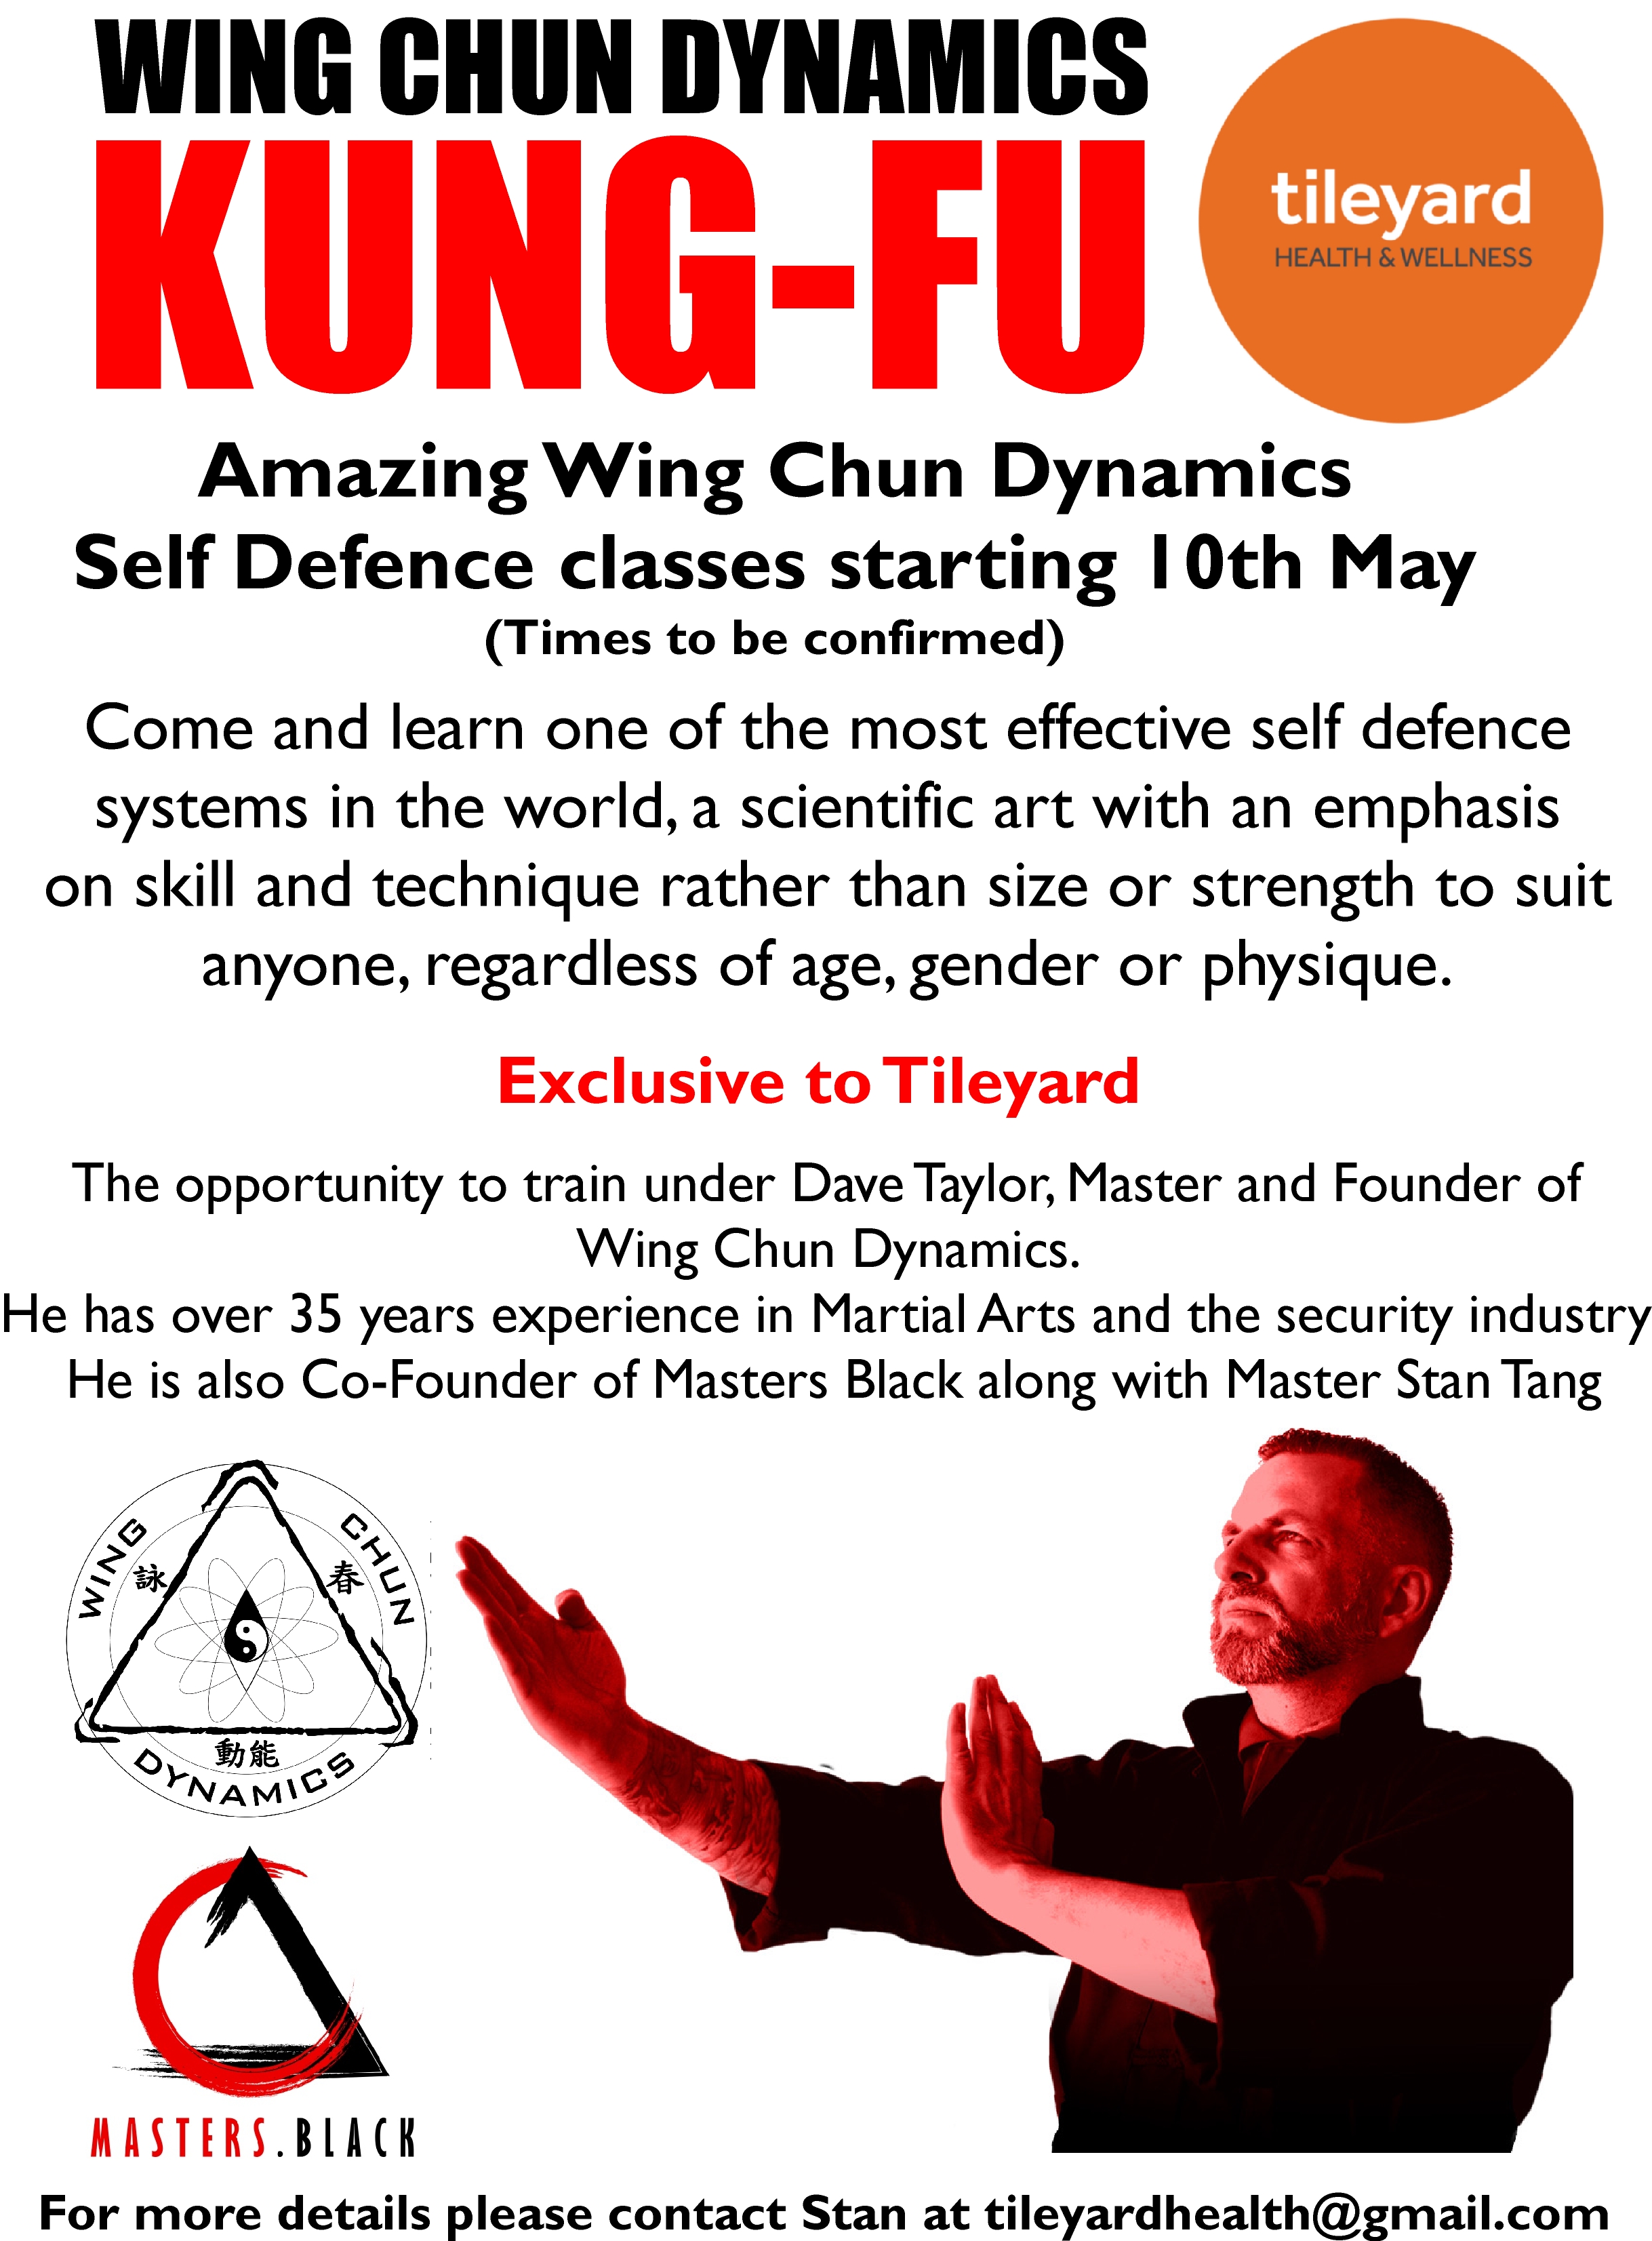 Wing Chun Dynamics opening in London